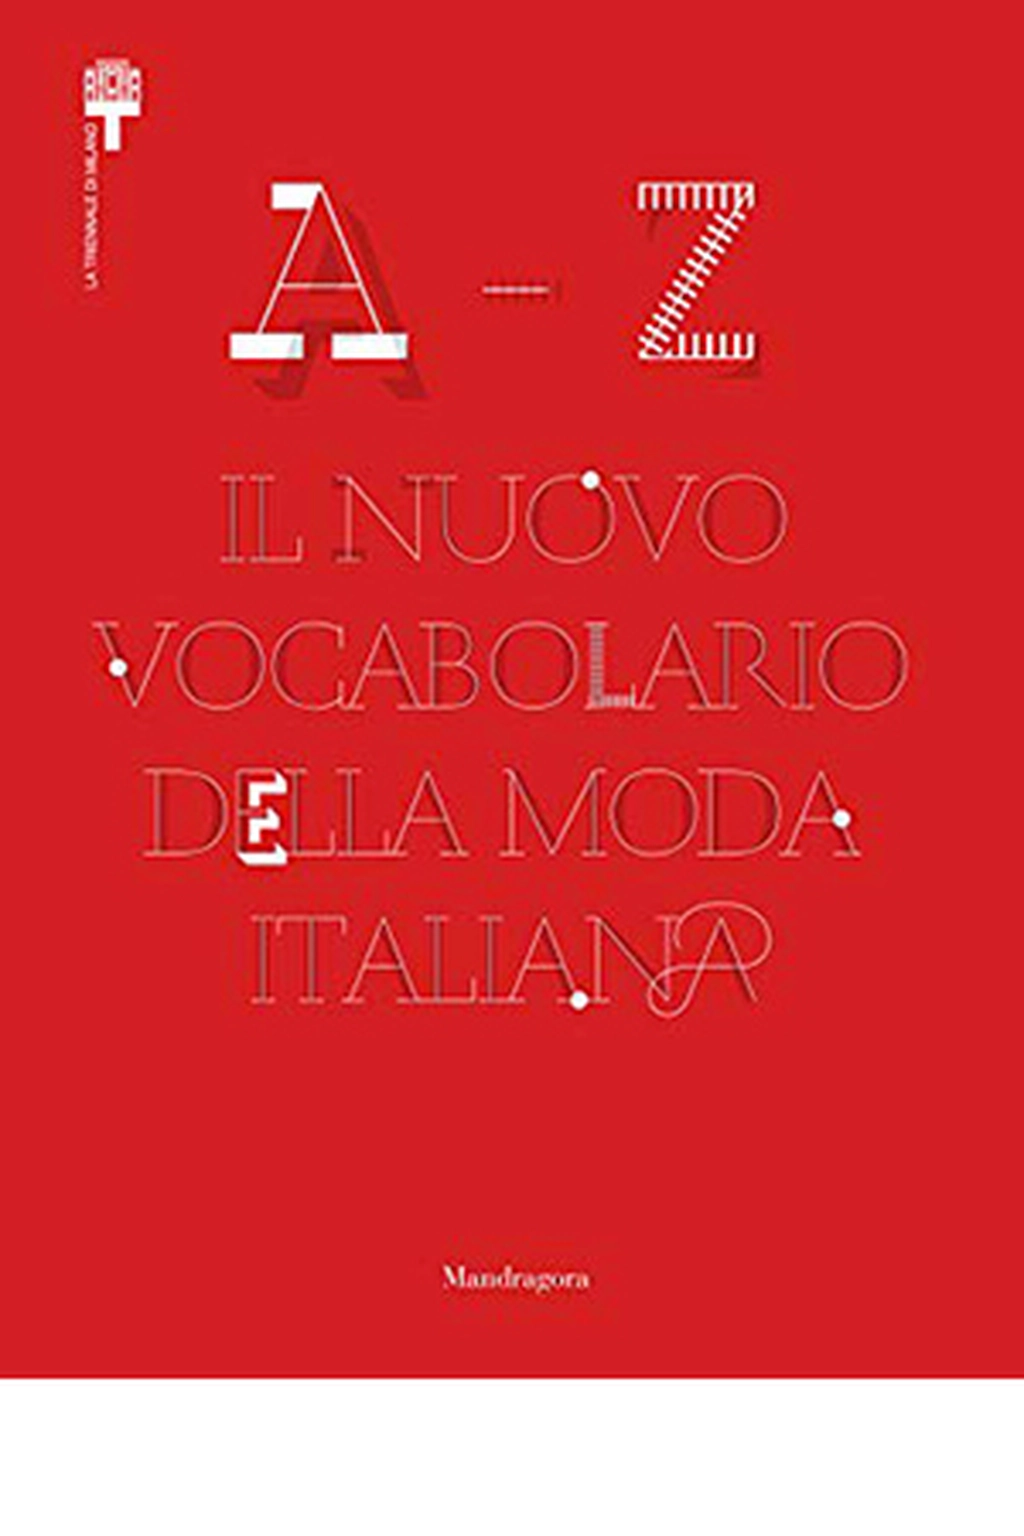 Il Nuovo Vocabolario della Moda Italiana